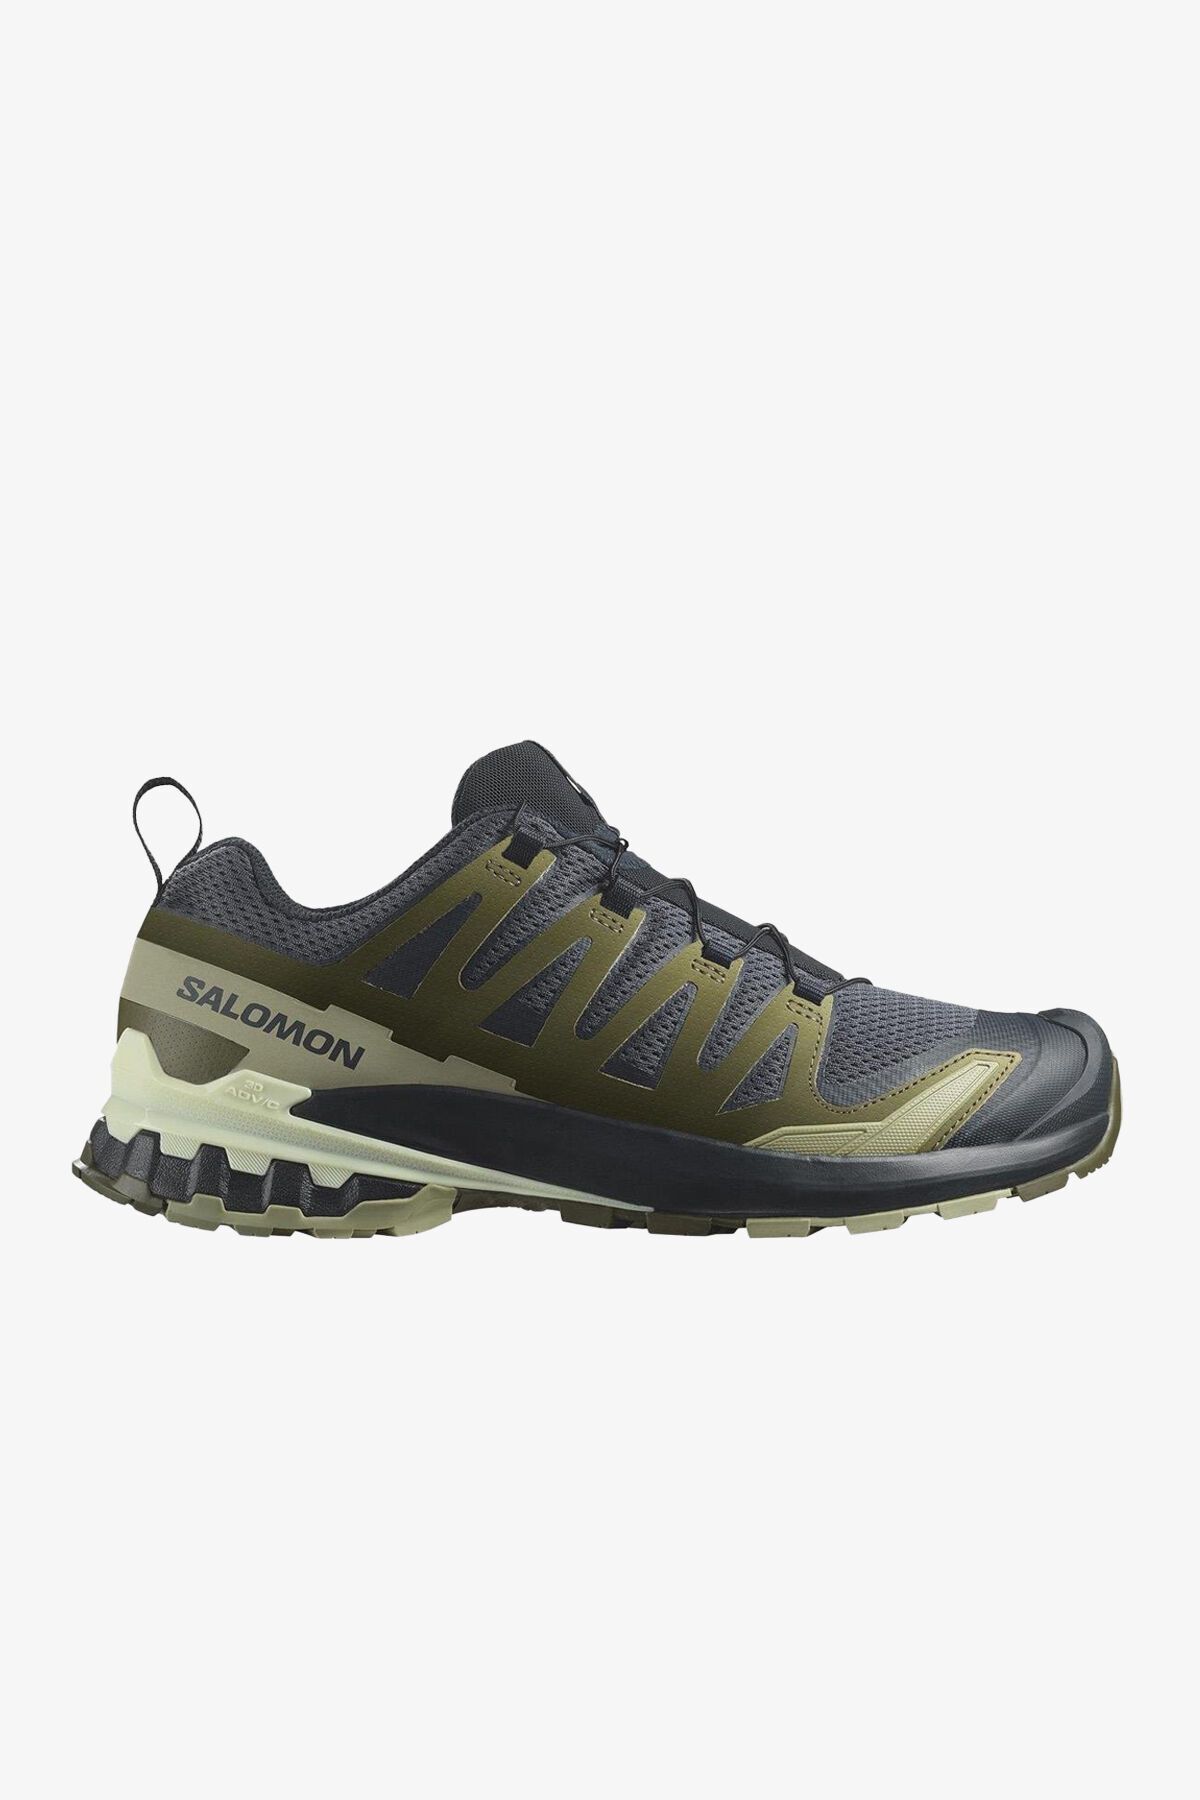 Salomon Xa Pro 3D V9 Erkek Yeşil Patika Koşu Ayakkabısı L47467500-4543